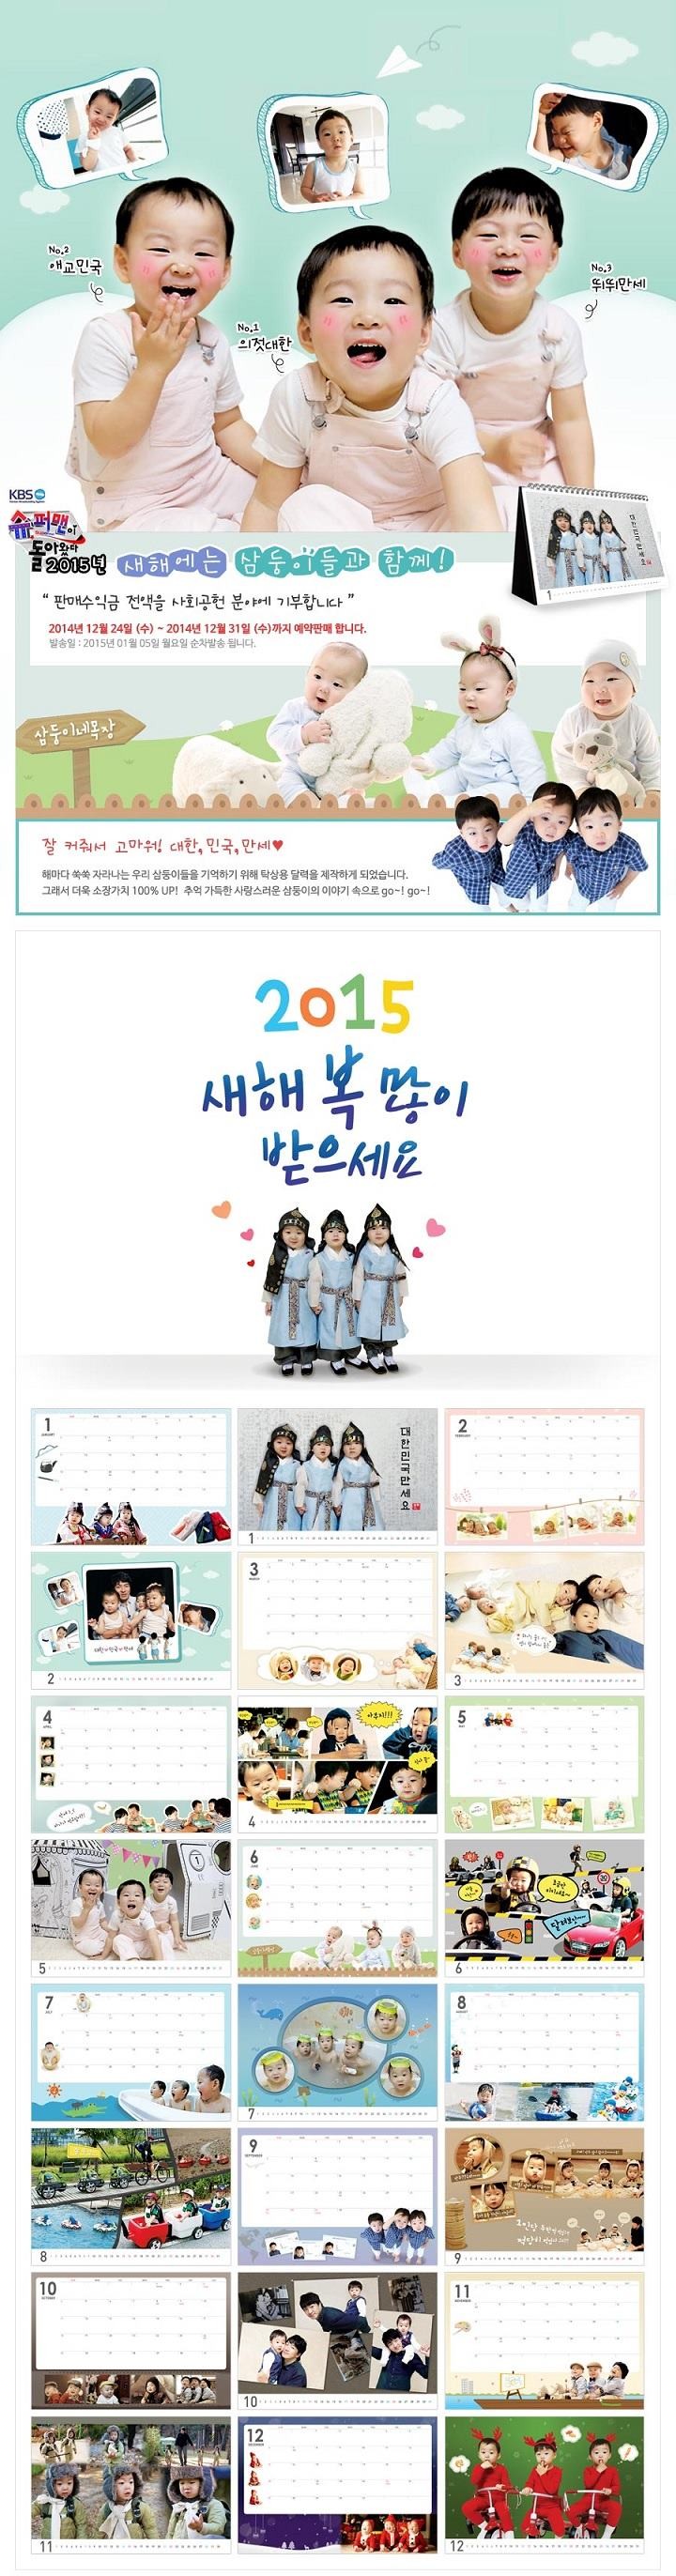 daehan minguk manse calendar 2015